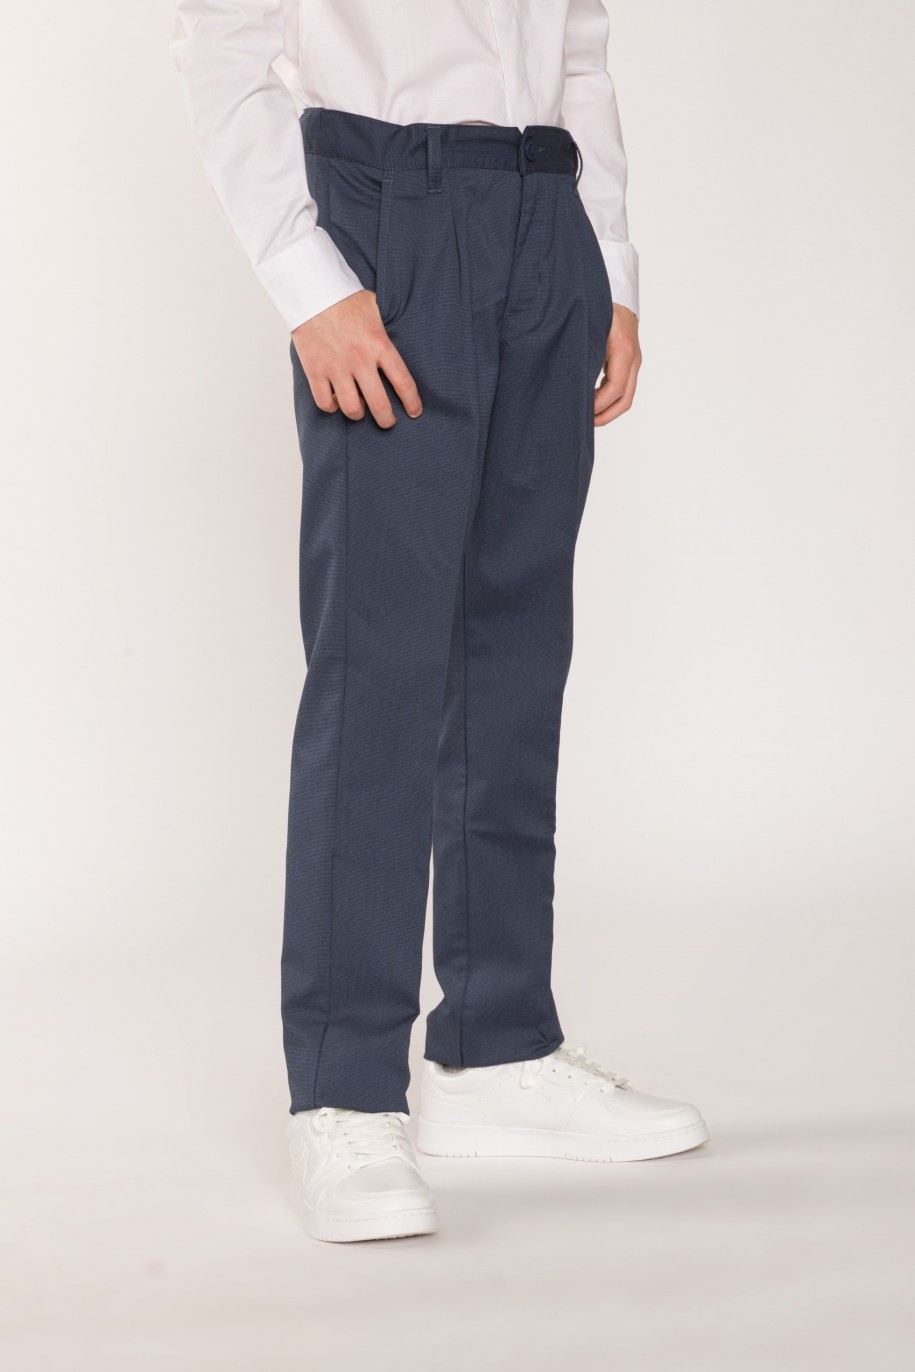 Eleganckie granatowe spodnie garniturowe dla chłopaka - 26473